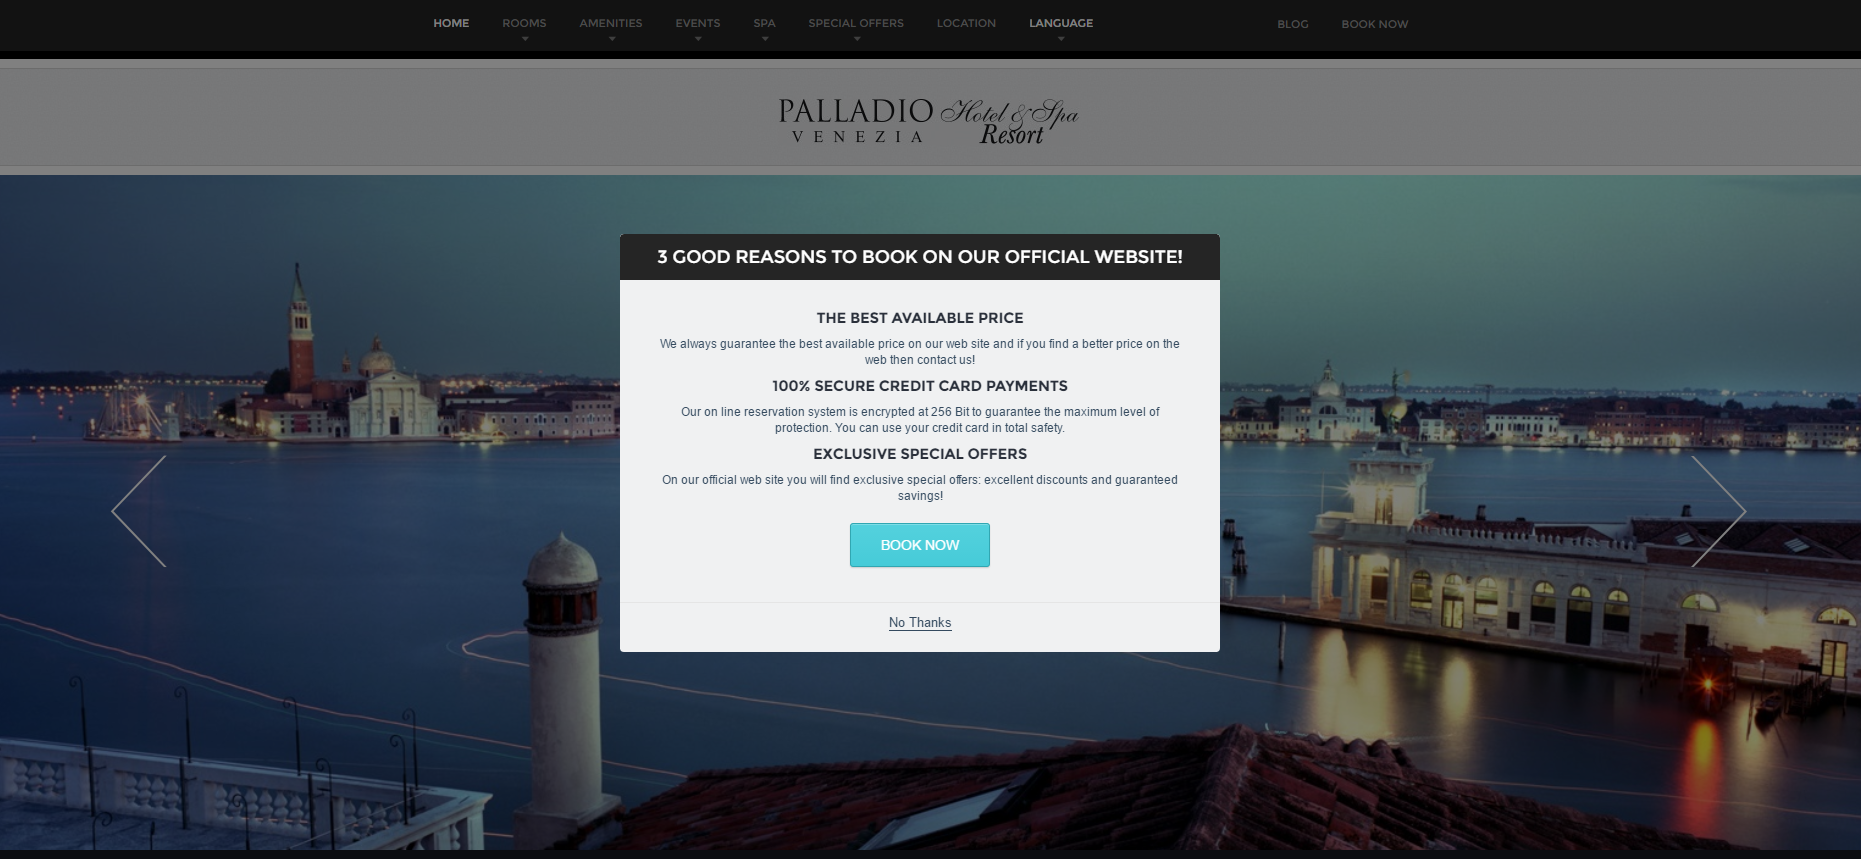 Página de inicio del sitio web del hotel Palladio